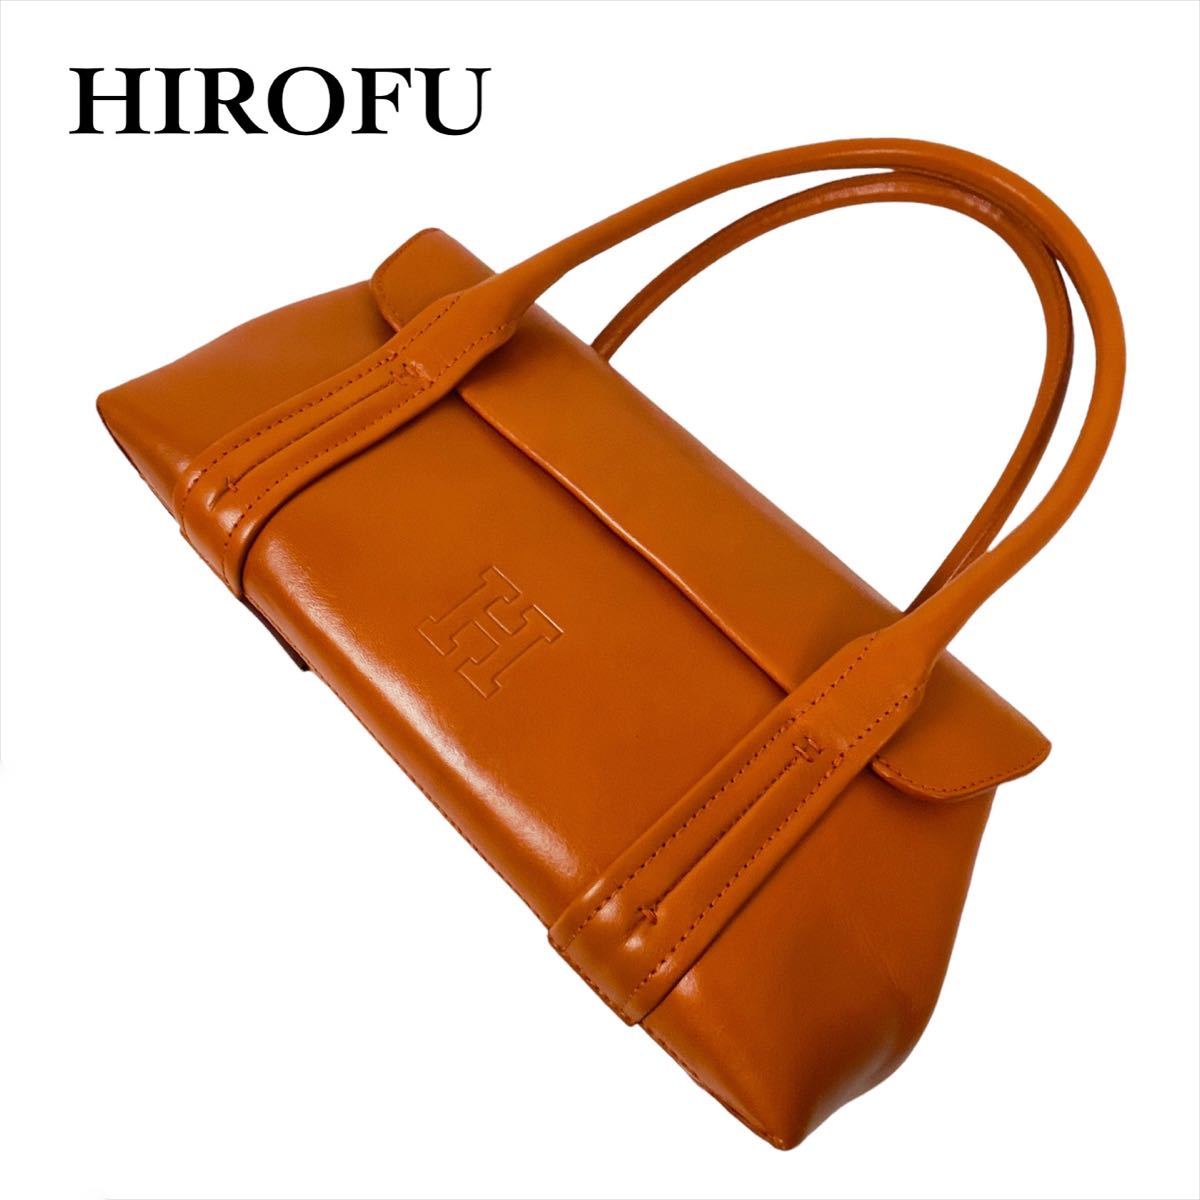 34％割引海外並行輸入正規品 HIROFU ヒロフ ハンドバッグ トートバッグ オレンジ 肩掛け レザー 革 型押し ロゴ ハンドバッグ  レディースファッション ファッション-MA-MAHIDA.SCH.ID